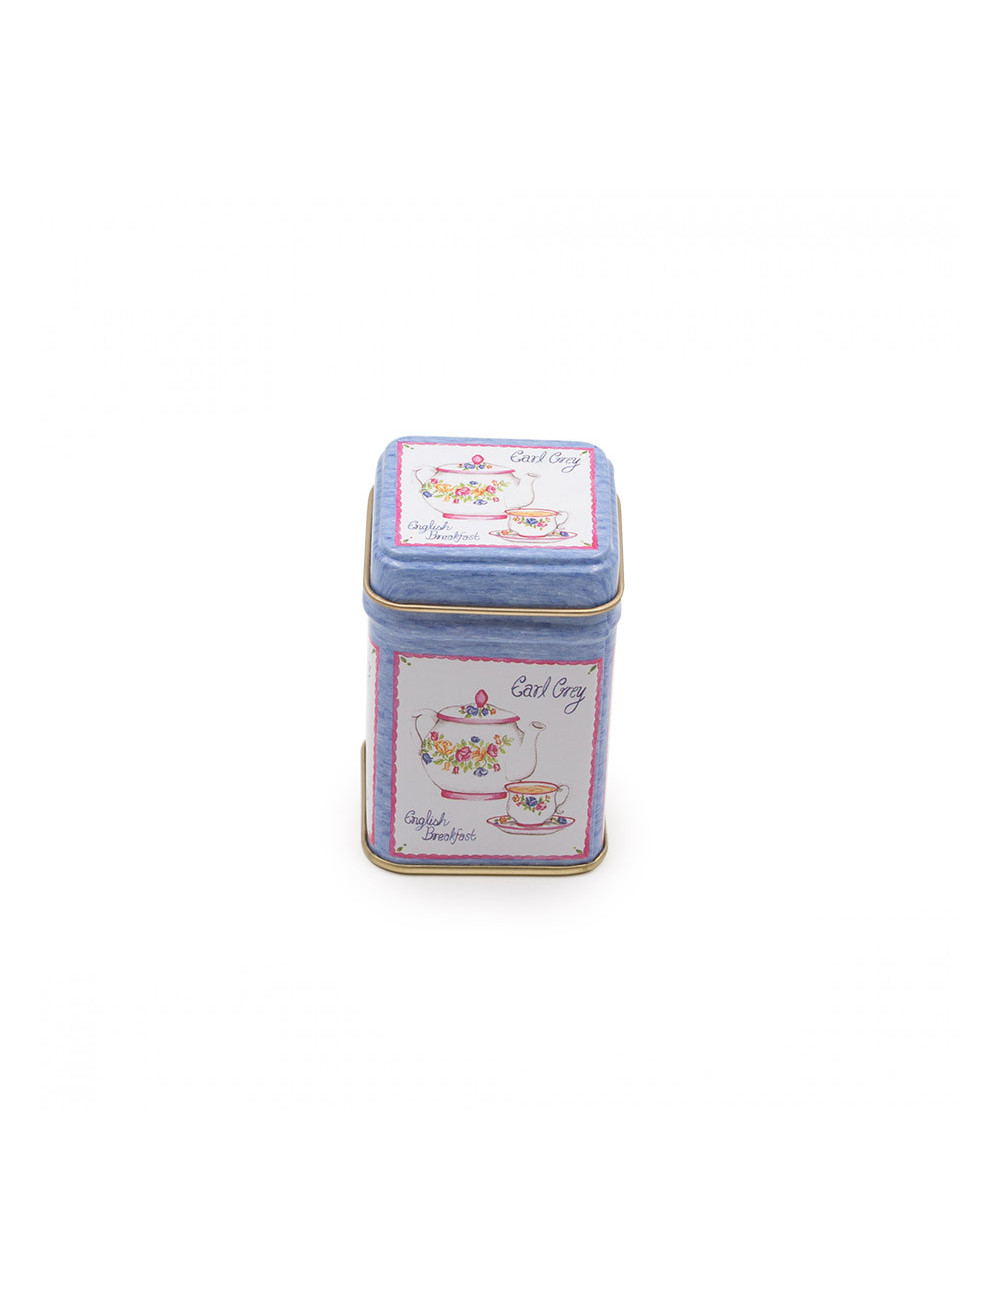 Contenitore porta tè e tisane lilla con decorazione naif - La Pianta del Tè Shop on line